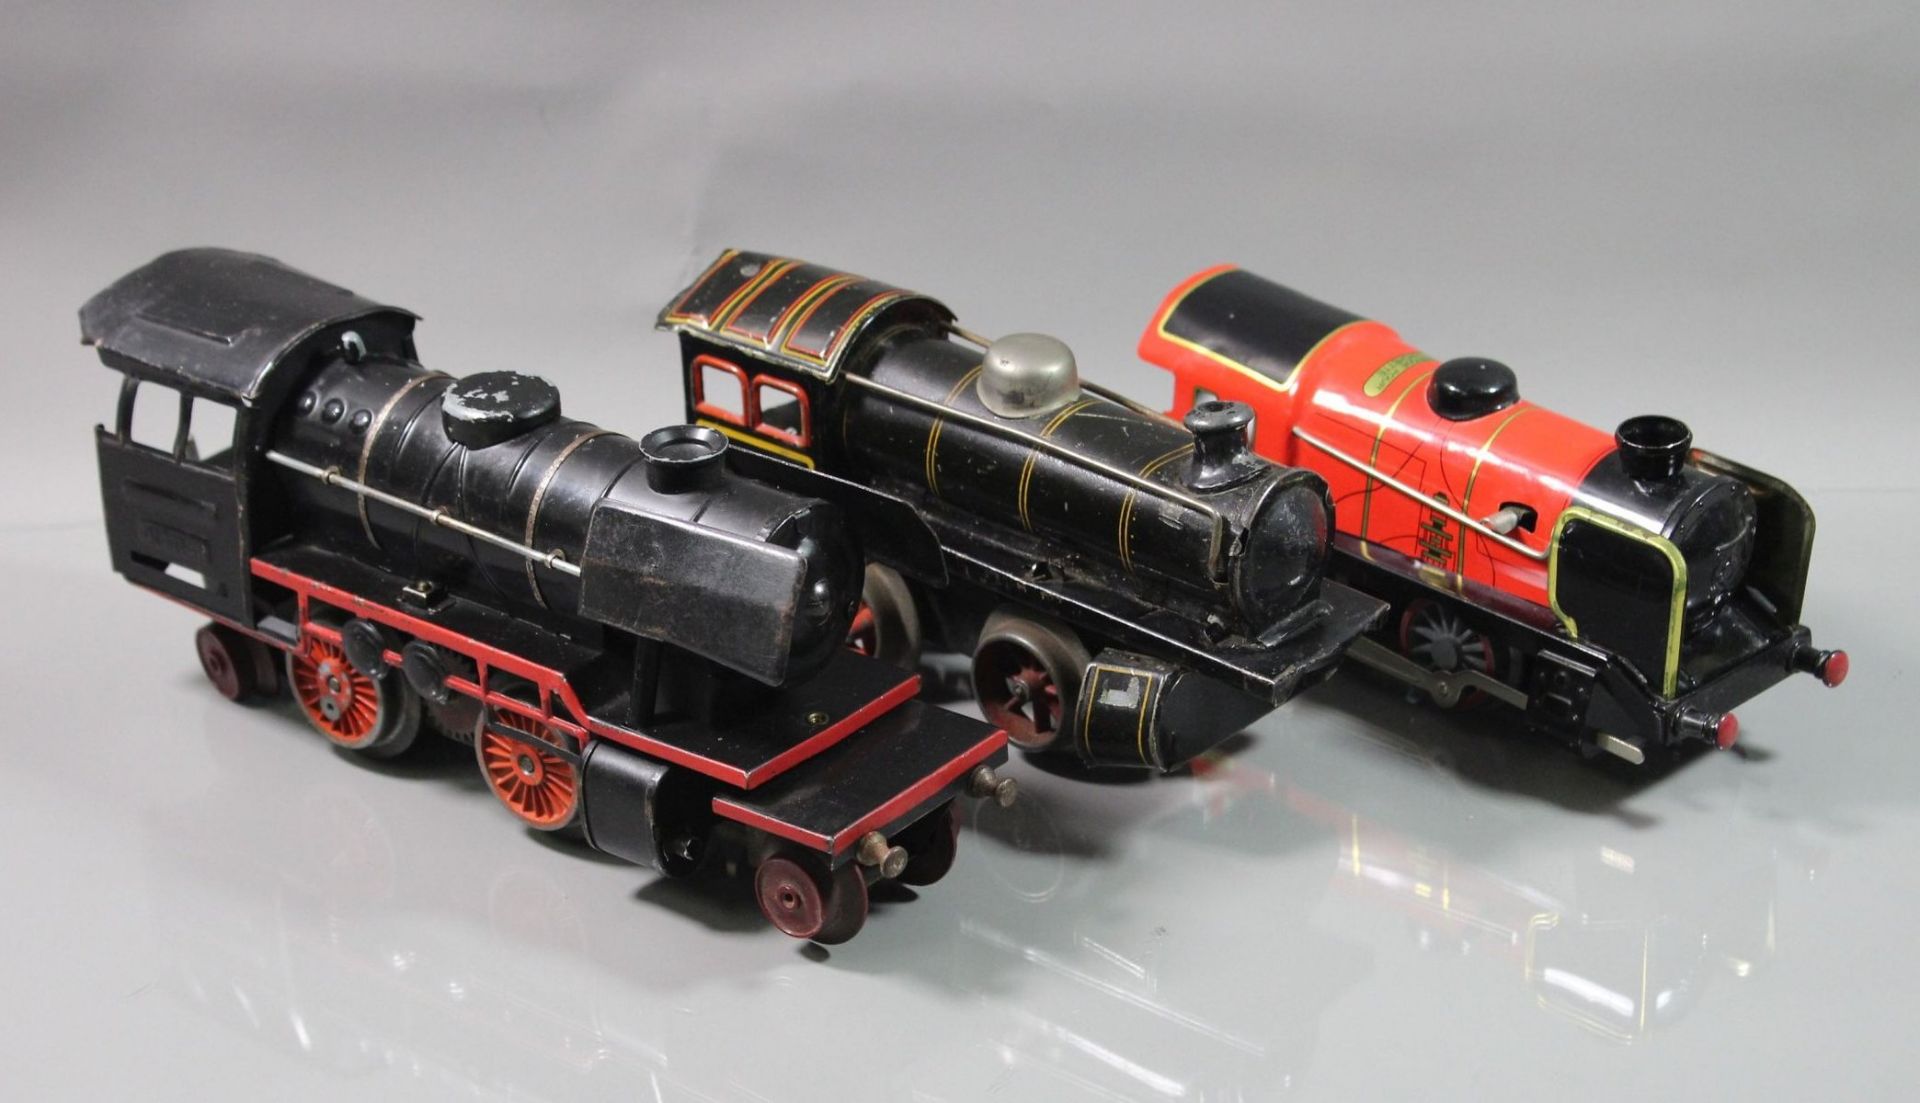 Konvolut Blech-Spielzeug, 3x div. Lokomotiven (Distler, Hornby und ungemarkt) sowie kl. Blechauto "